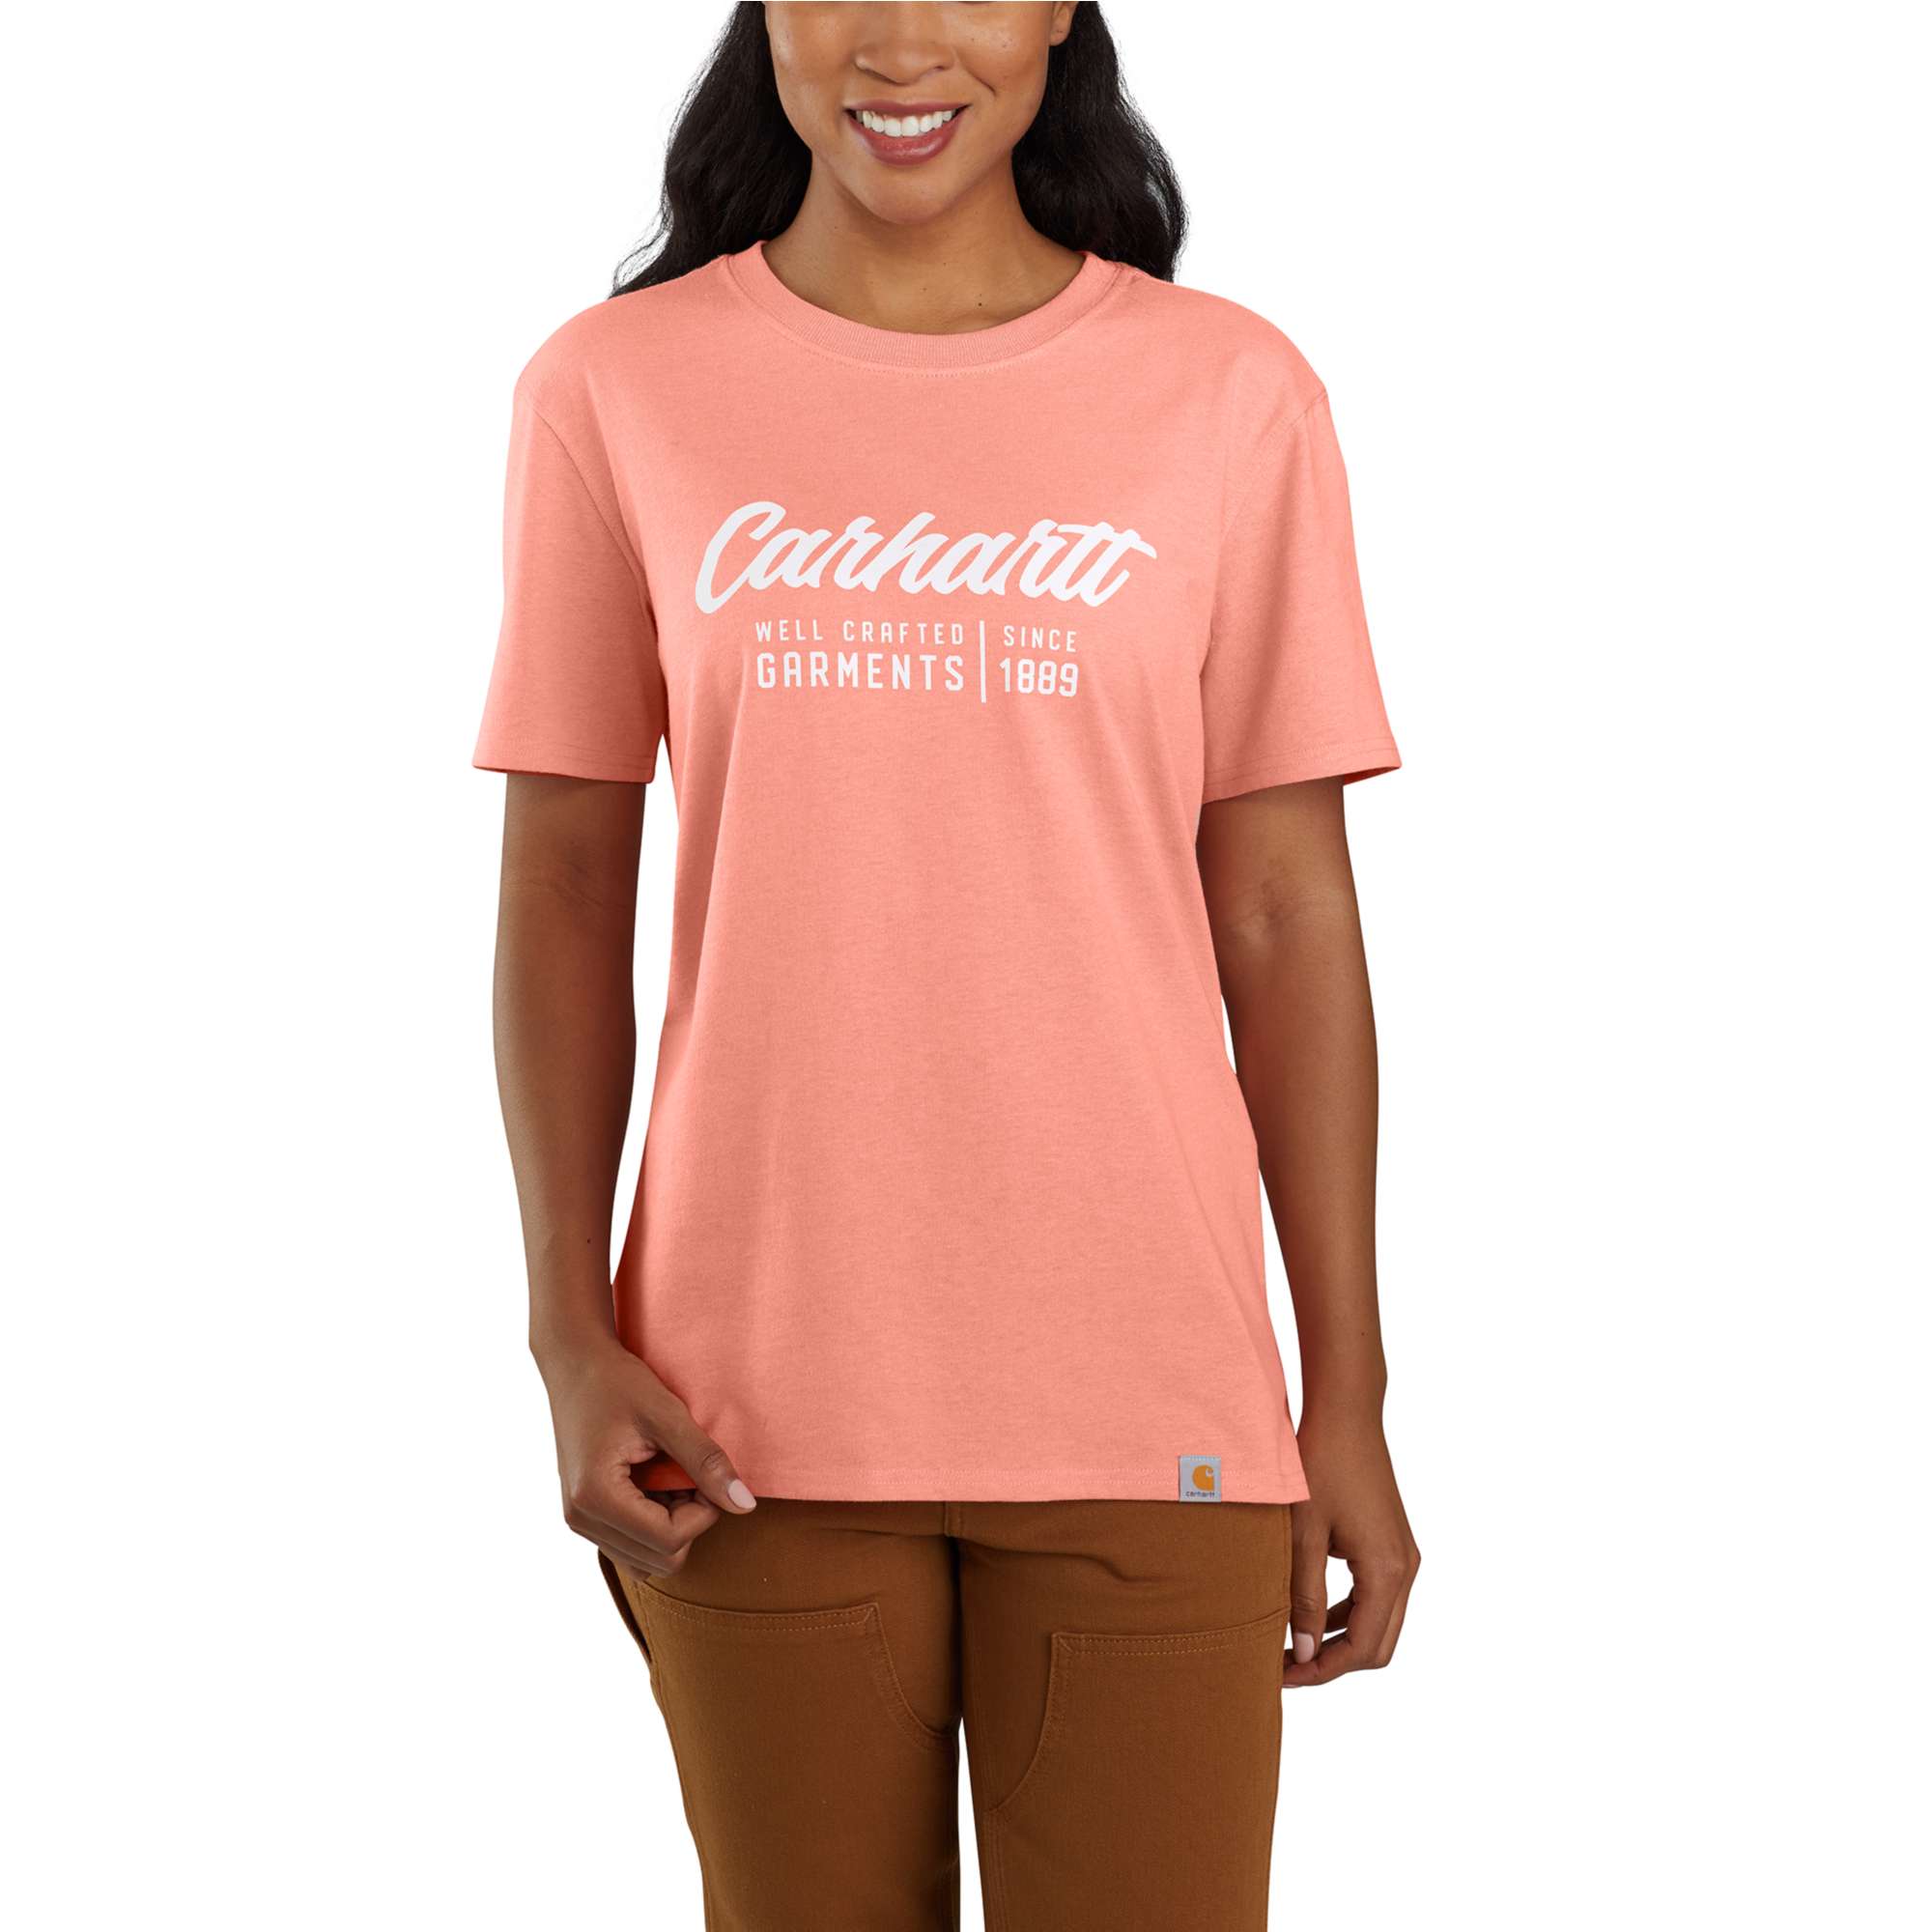 Carhartt Damen T-Shirt mit Aufdruck, Hibiscus (Rosa)